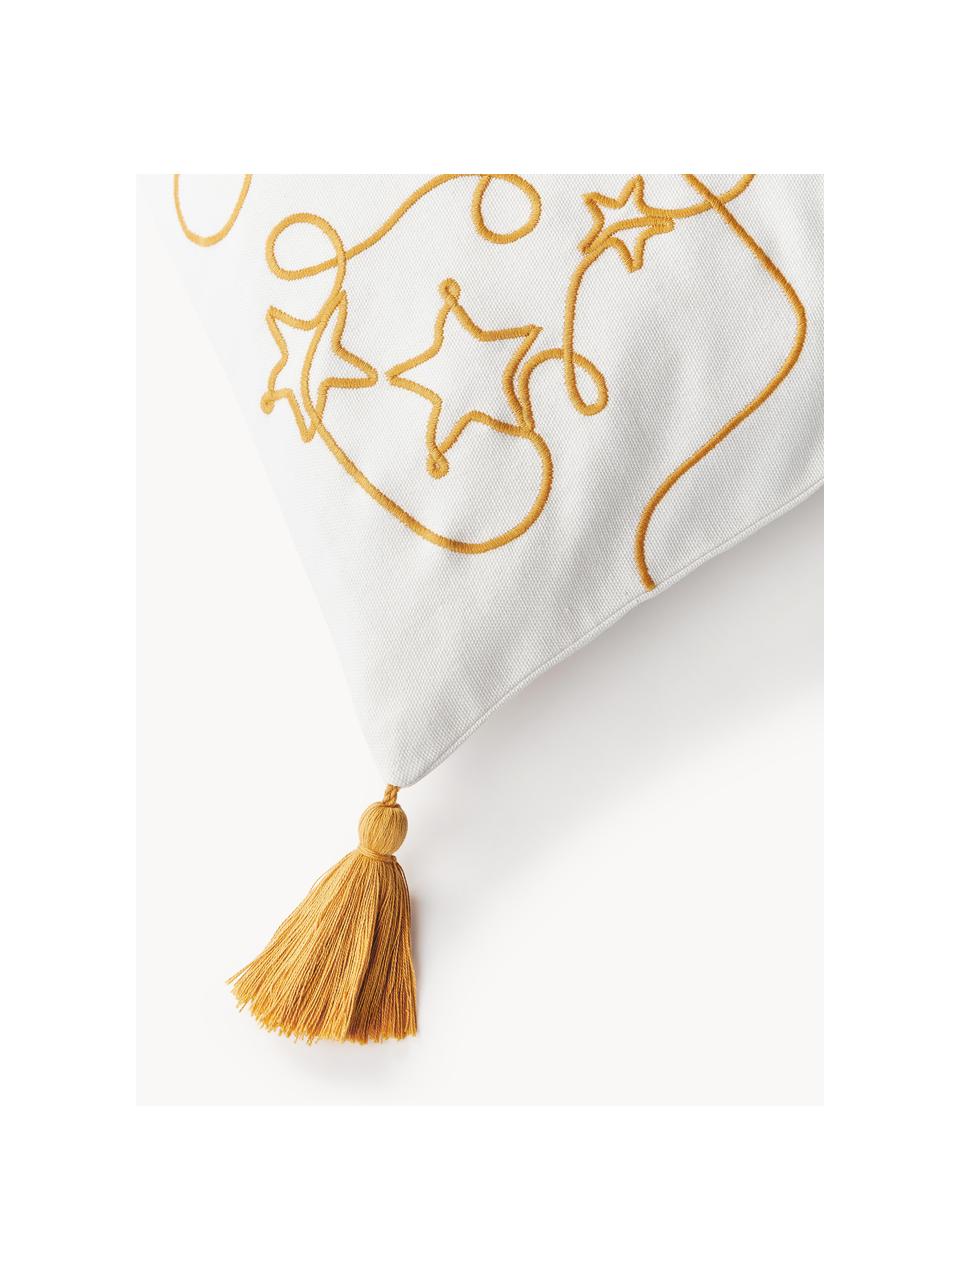 Bestickte Kissenhülle Alora mit weihnachtlichem Motiv, 100 % Baumwolle, Weiß, Senfgelb, B 45 x L 45 cm